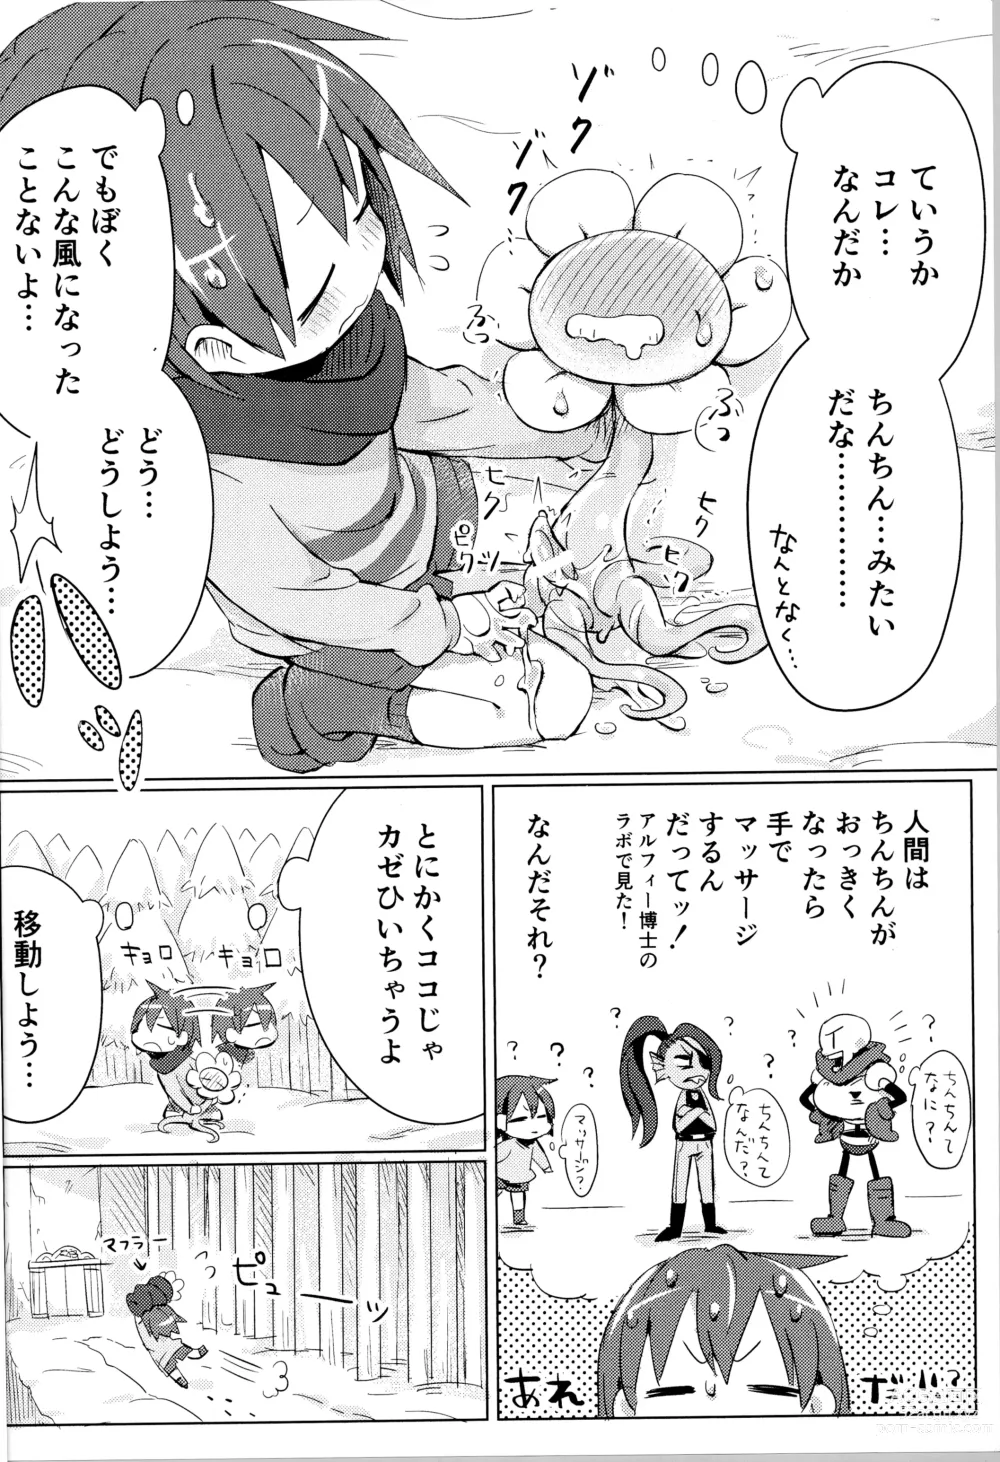 Page 13 of doujinshi Flowey, Daijoubu?